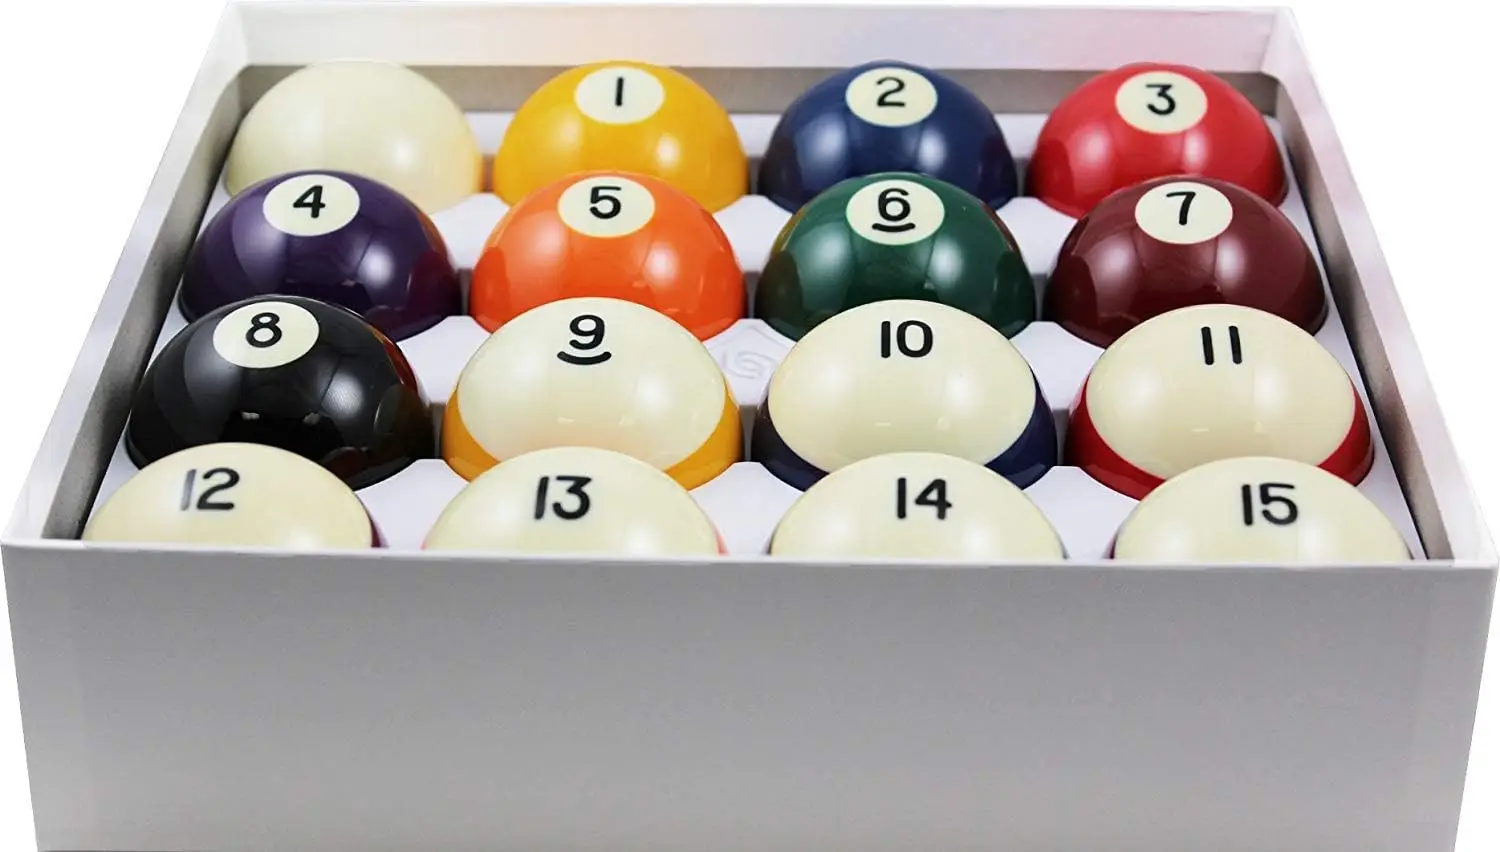 

Стандартные бильярдные/бильярдные шары стандартного размера Crown, полный 16 наборов